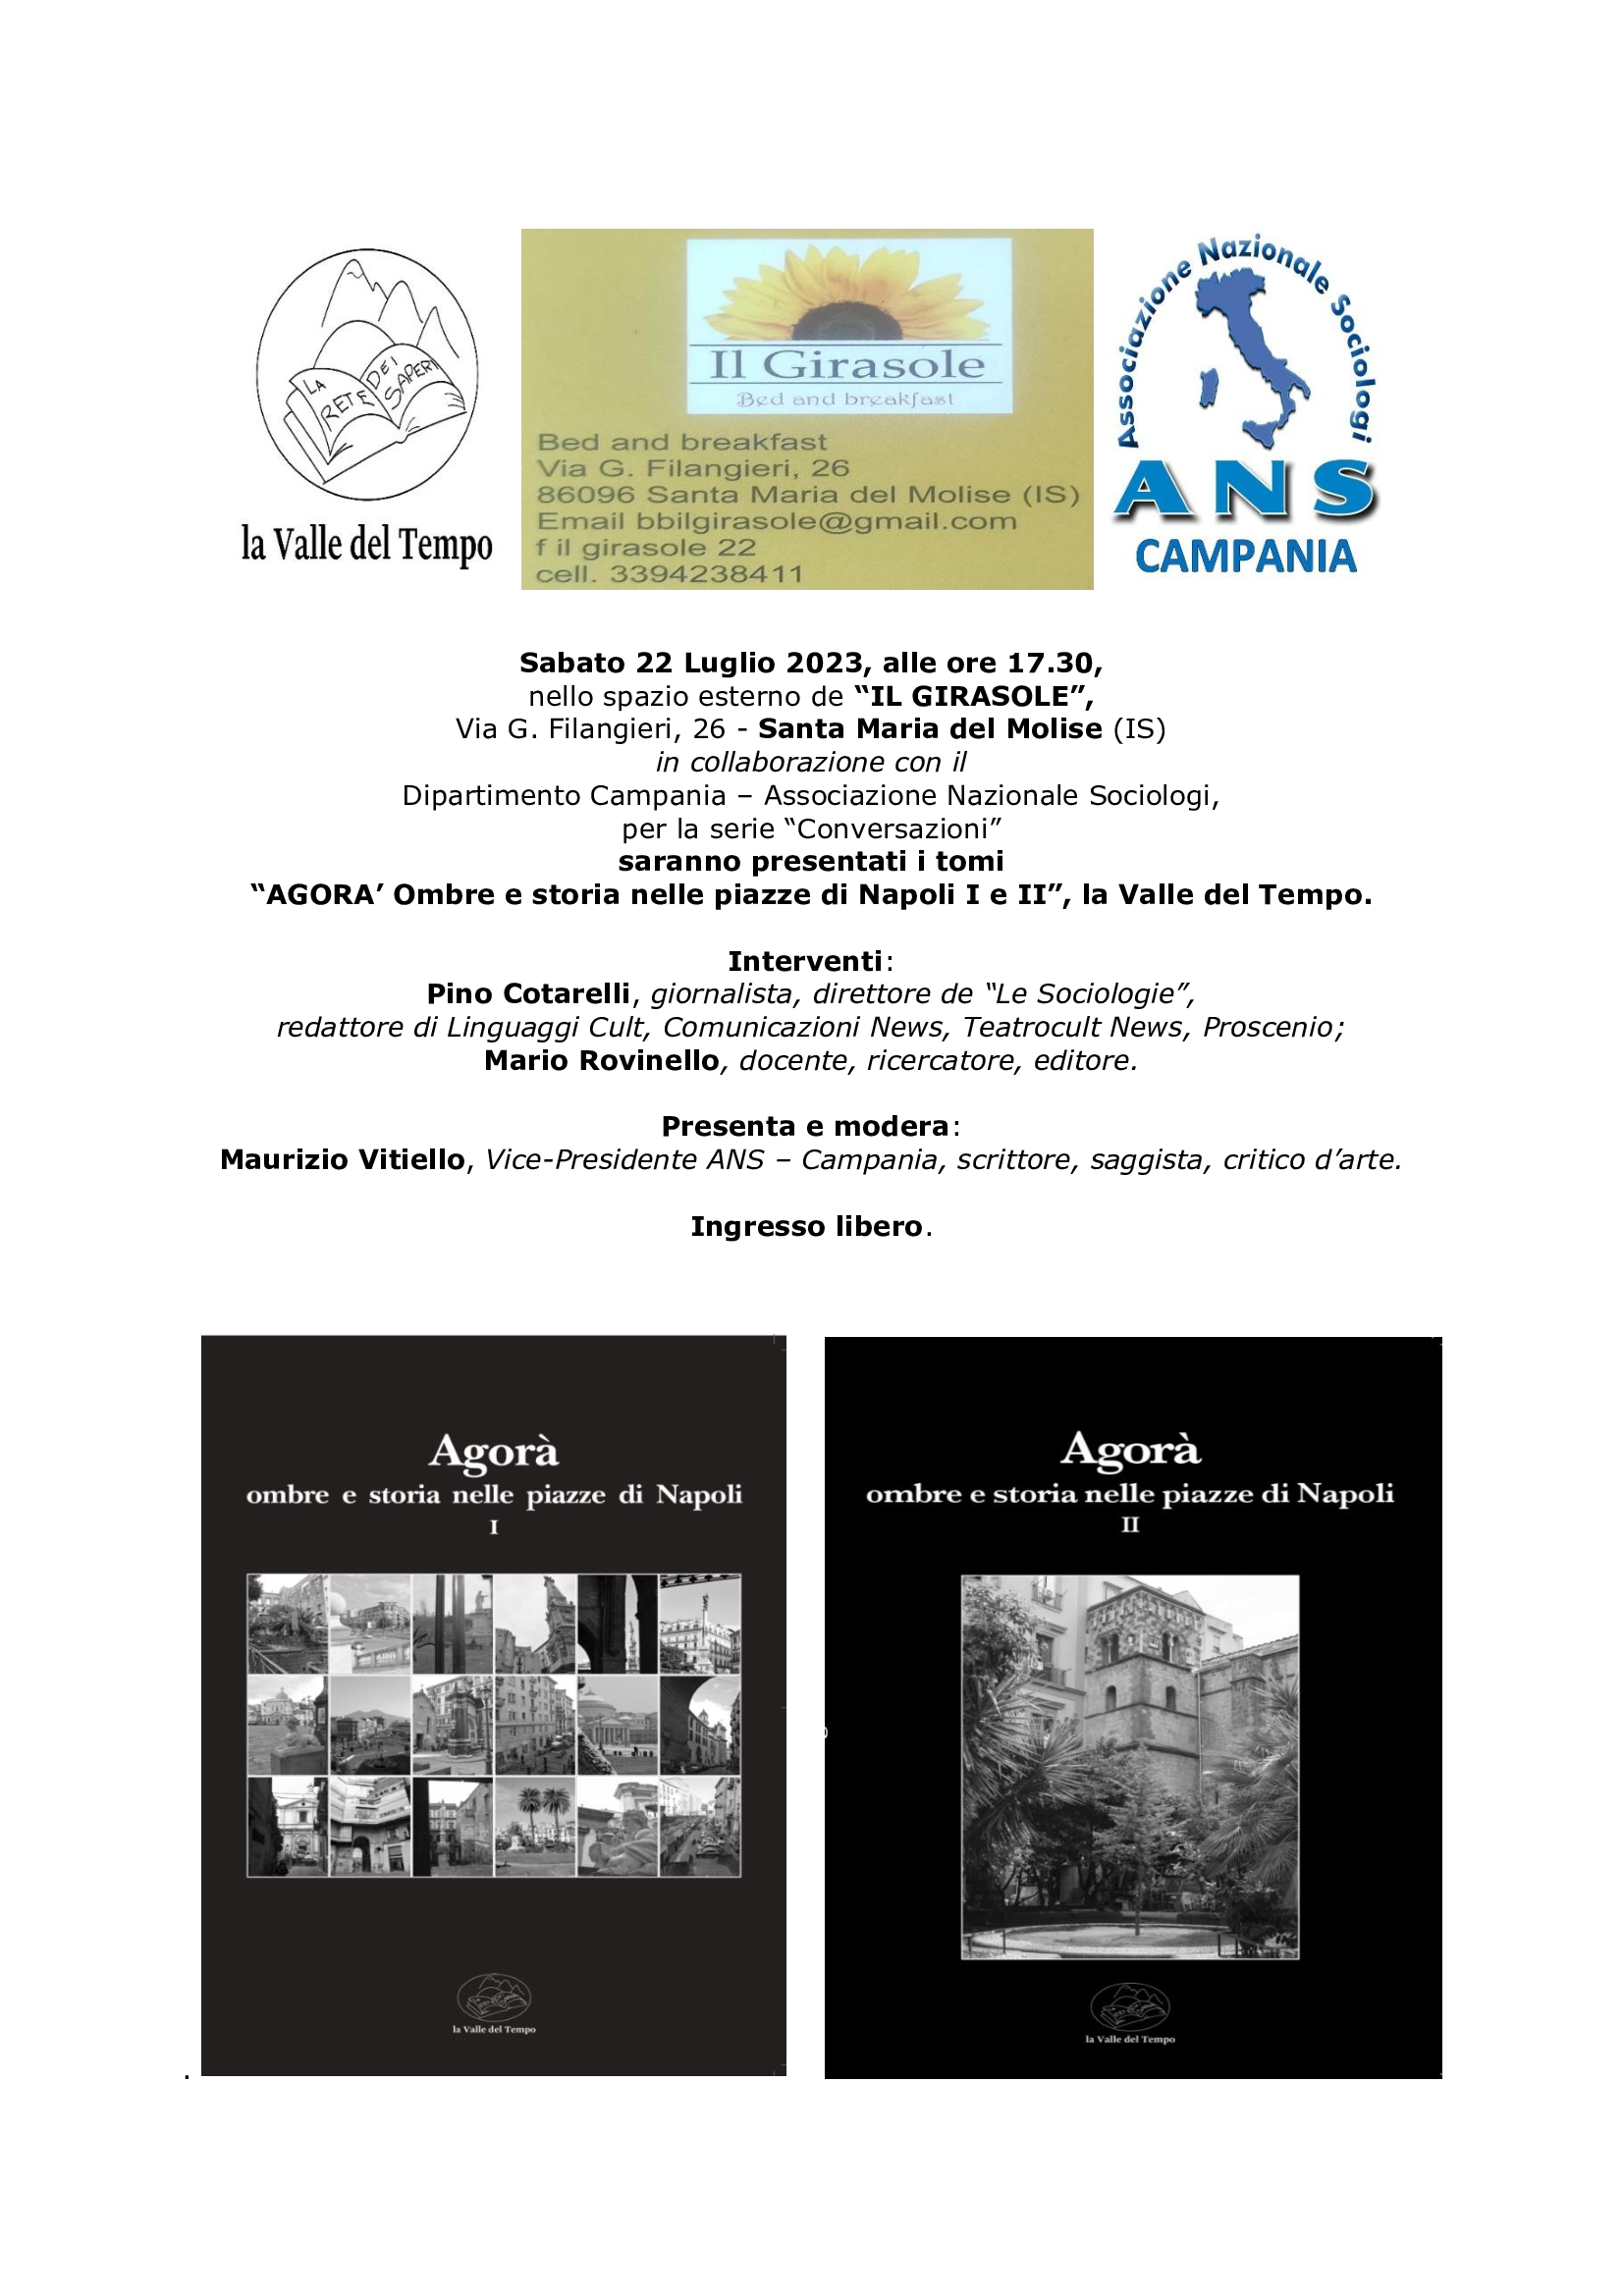 Associazione Nazionale Sociologi, per la serie “Conversazioni” presenta i libri “AGORA’ Ombre e storia nelle piazze di Napoli I e II”, la Valle del Tempo”